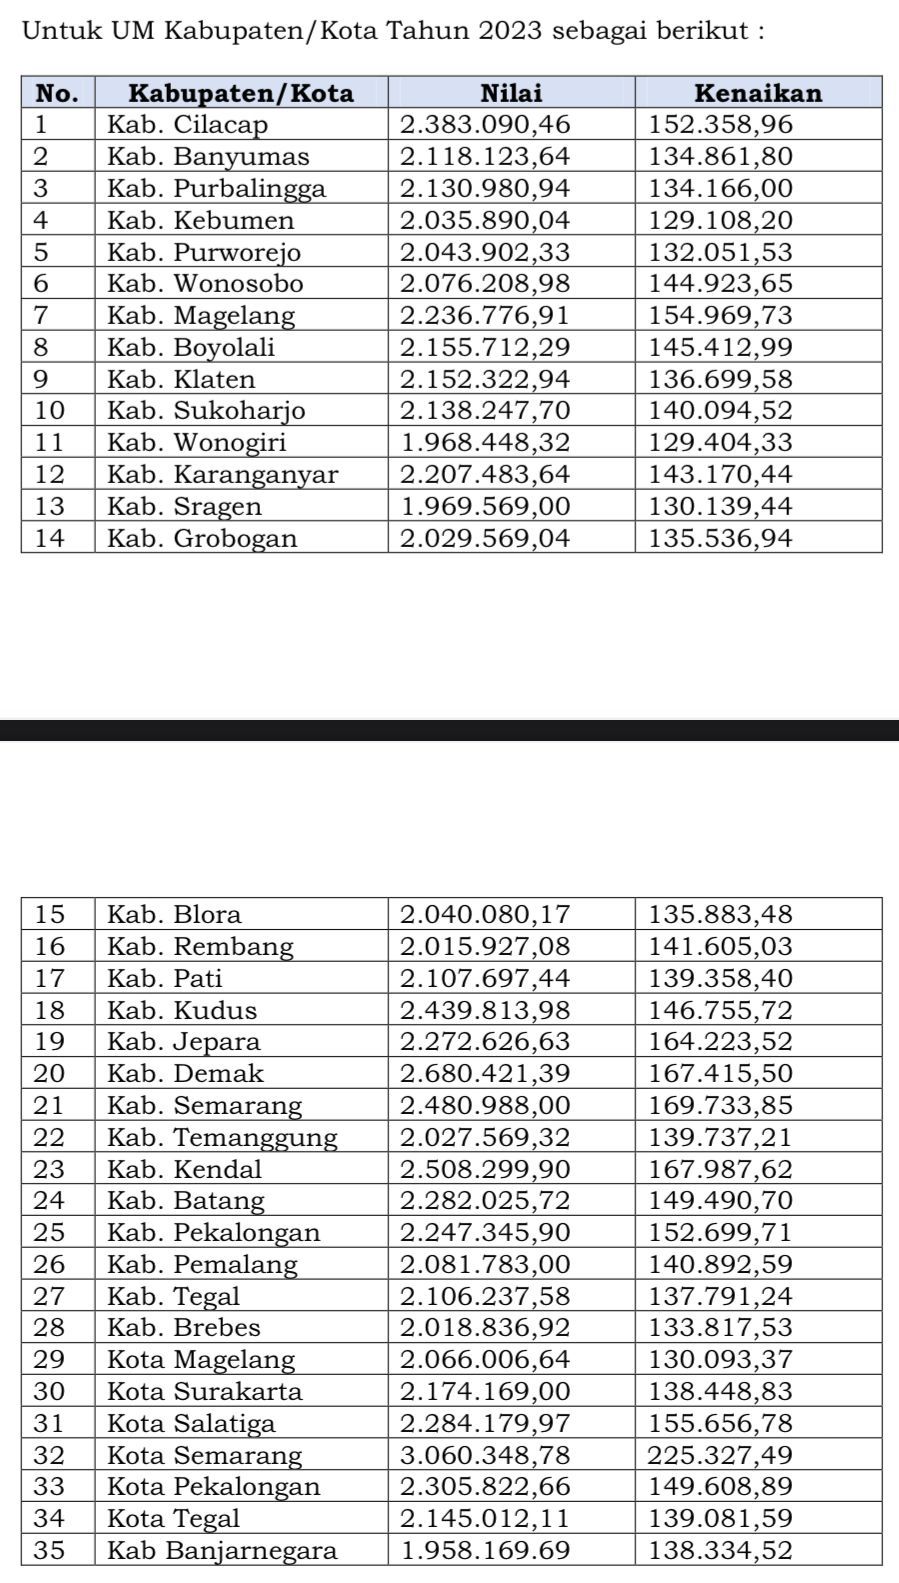 Ini Kabupaten dengan UMK 2023 Tertinggi di Jawa Tengah lengkap daftar 35 UMK 2023 di Jateng.*